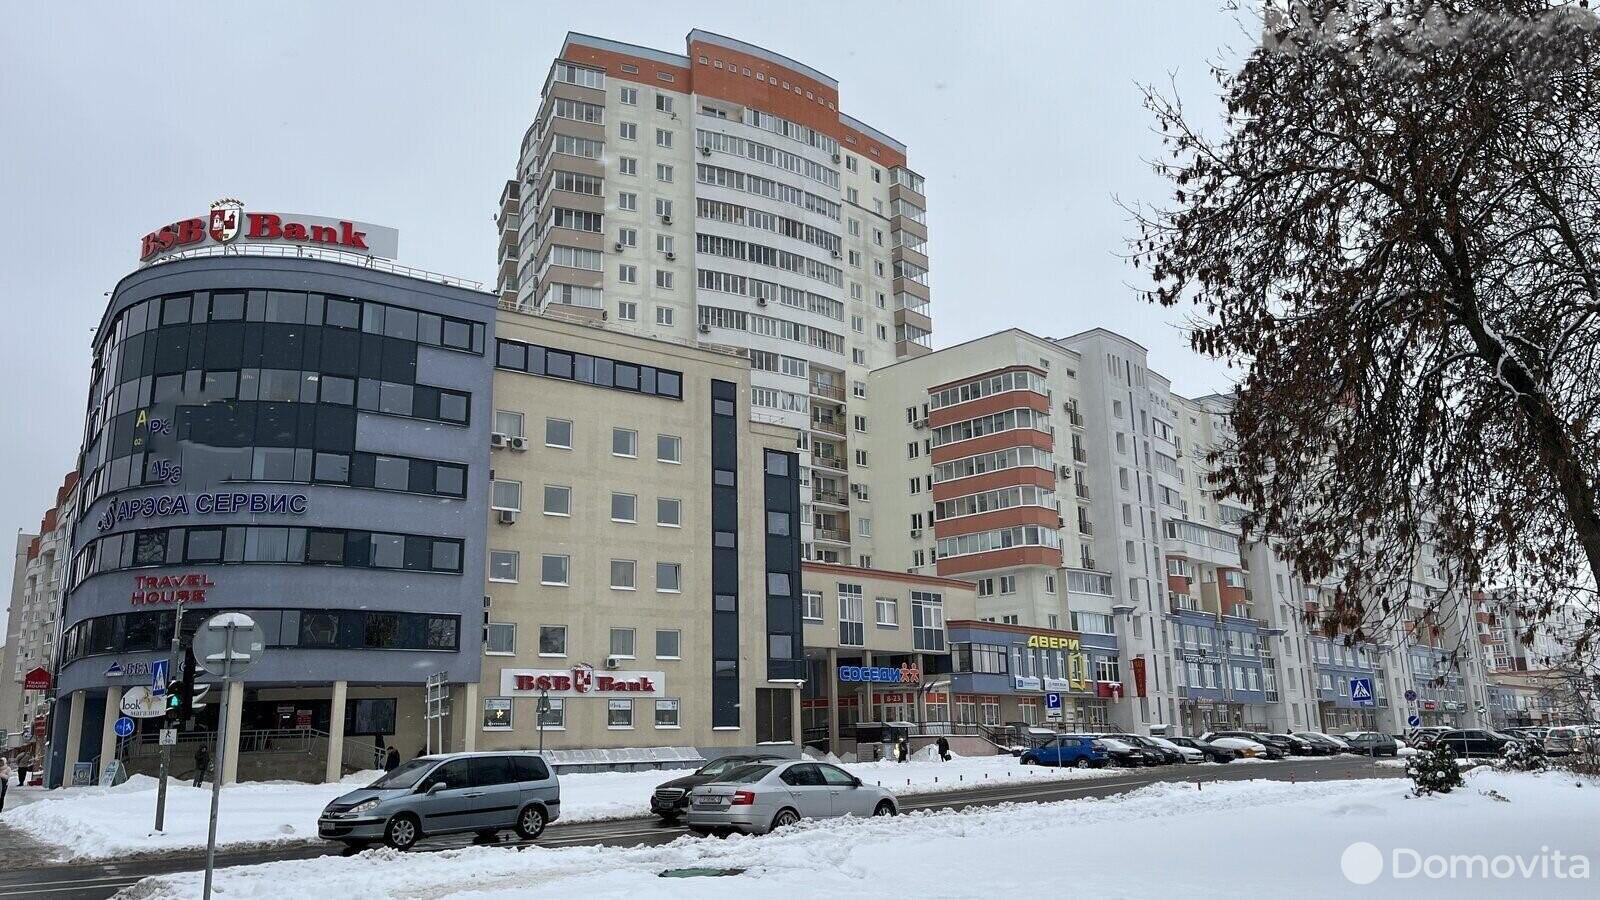 Аренда торговой точки на ул. Олешева, д. 1 в Минске, 800USD, код 965086 - фото 1